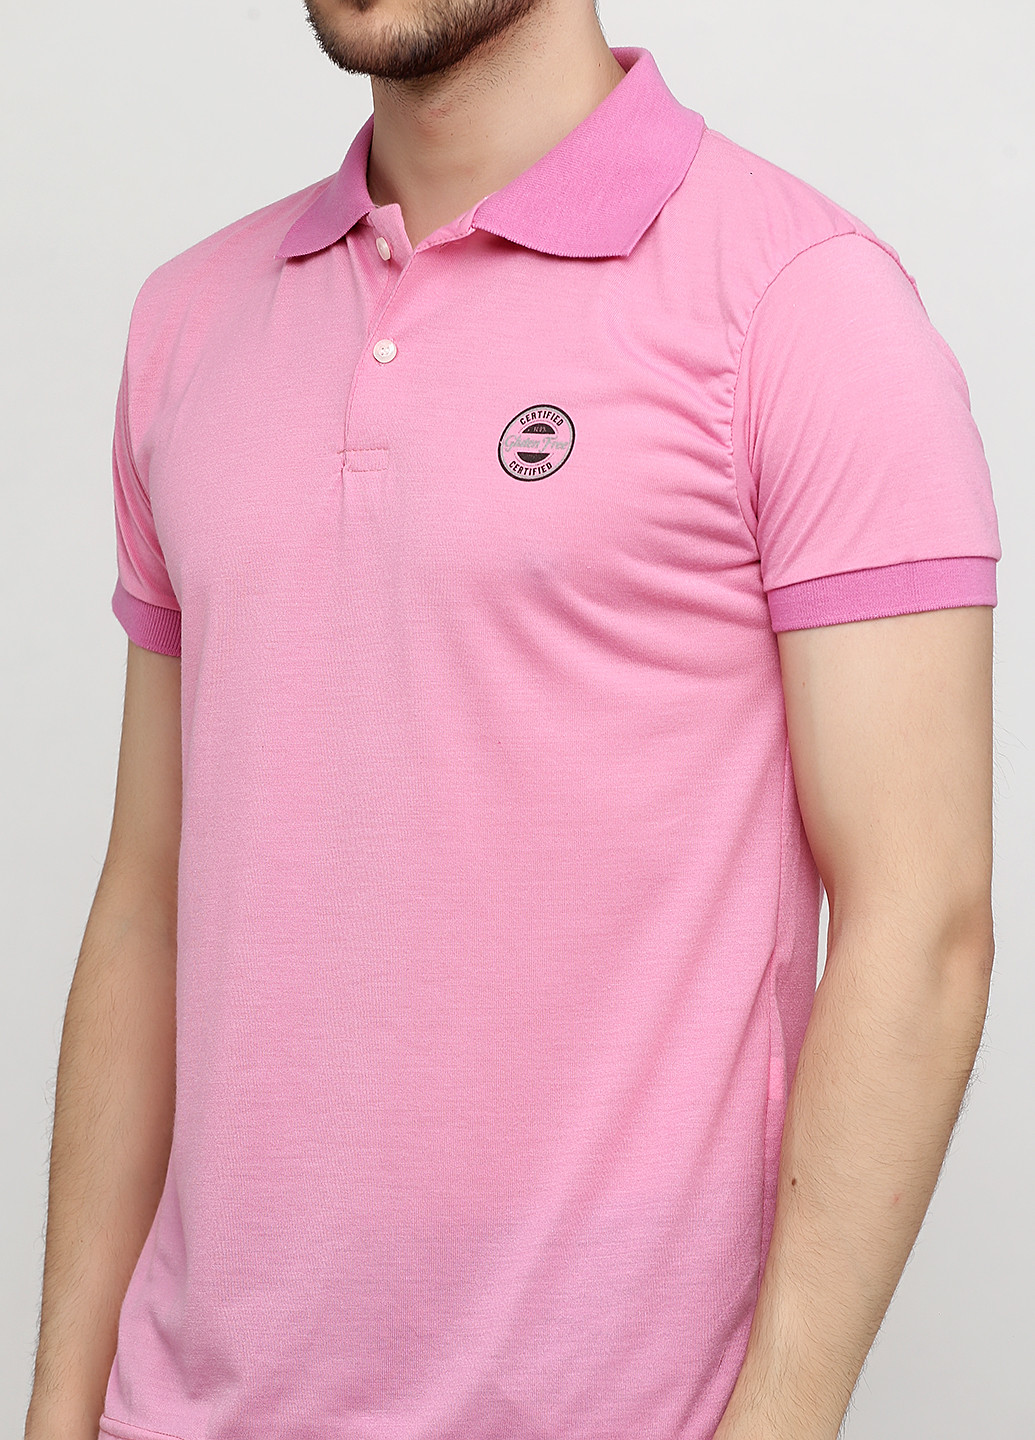 Розовая футболка-поло для мужчин Chiarotex однотонная